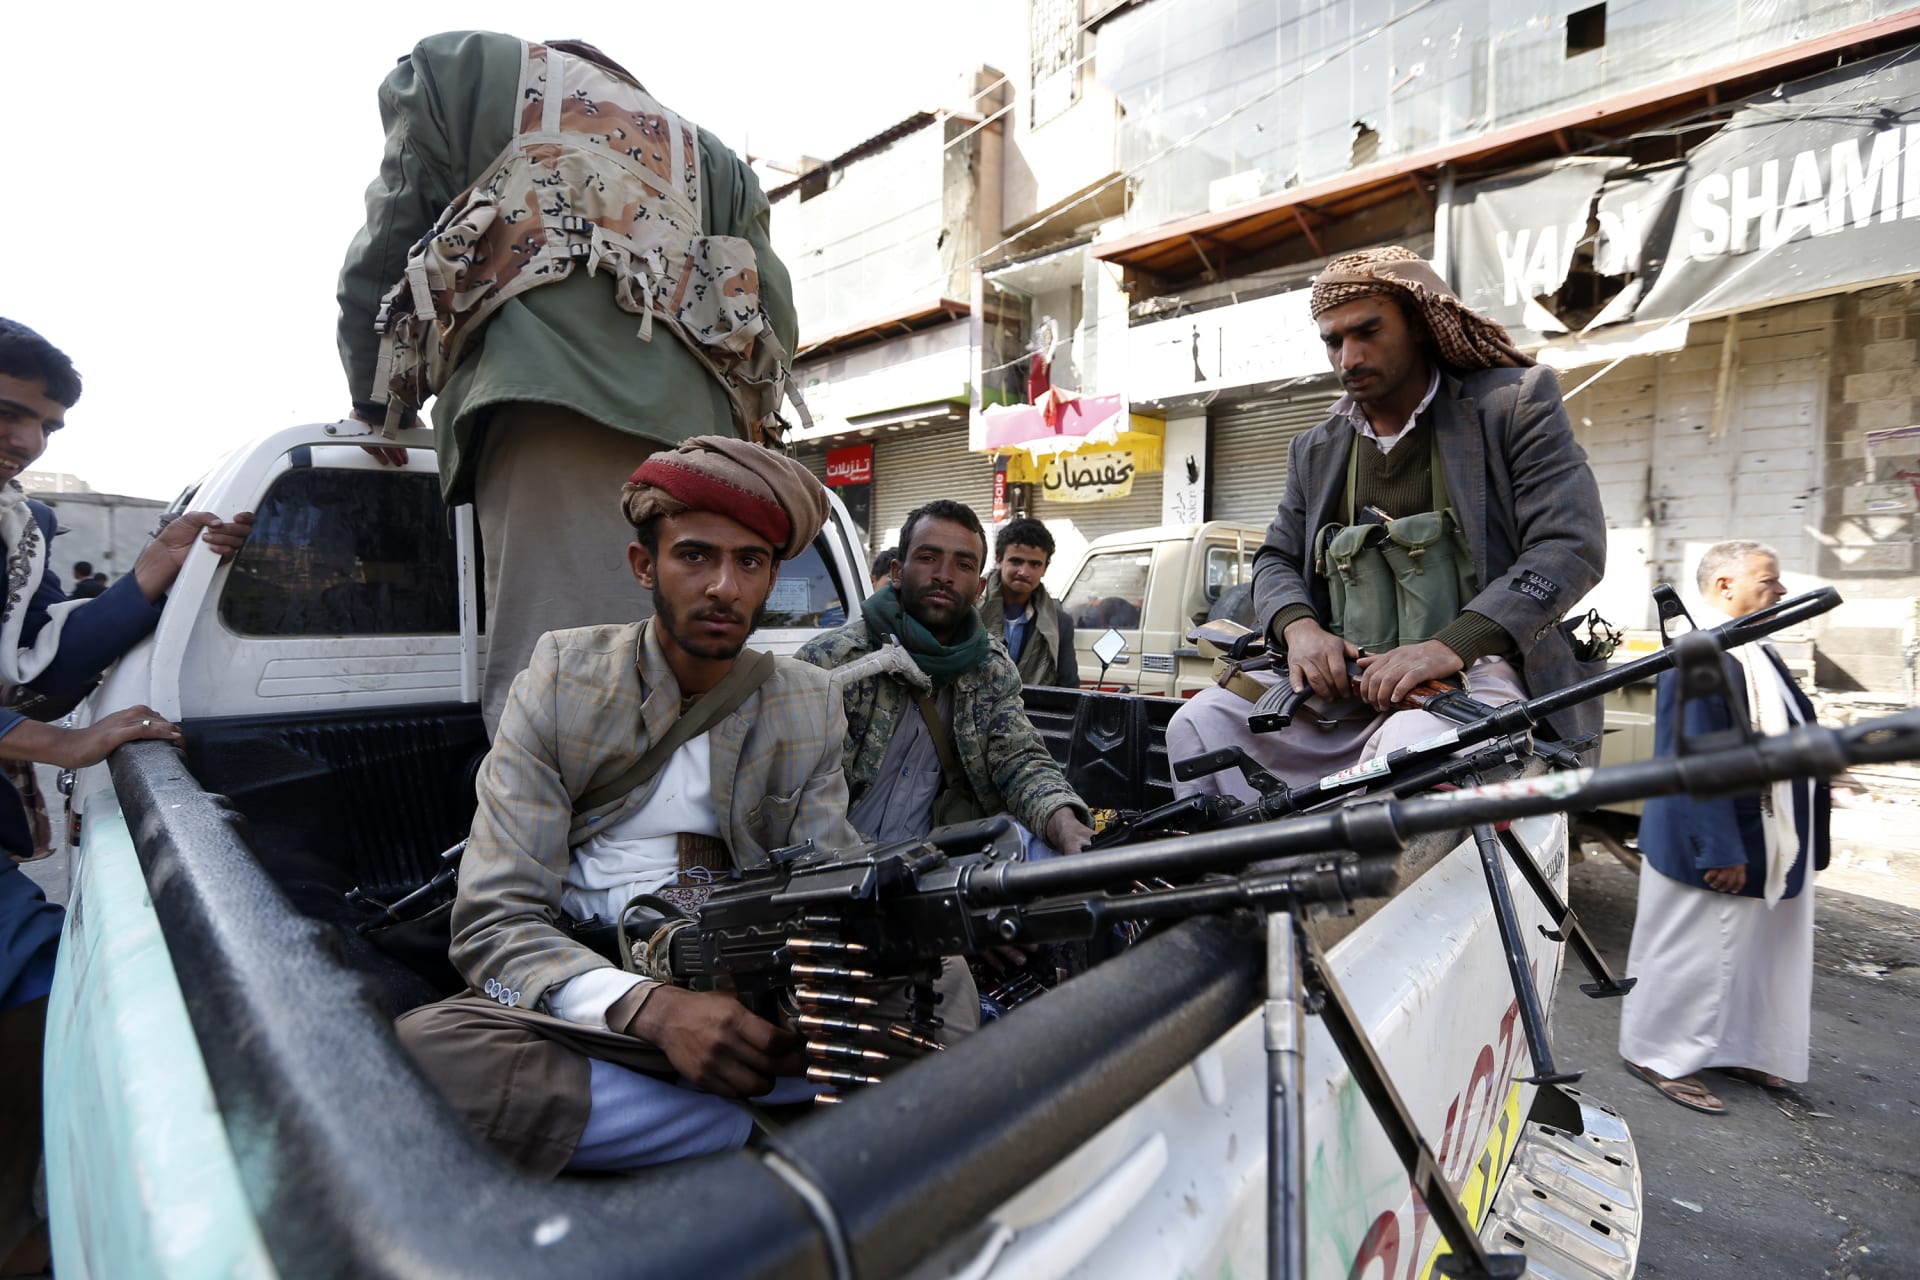 وزير يمني: ألف قتيل على يد الحوثي وصنعاء مدينة رعب